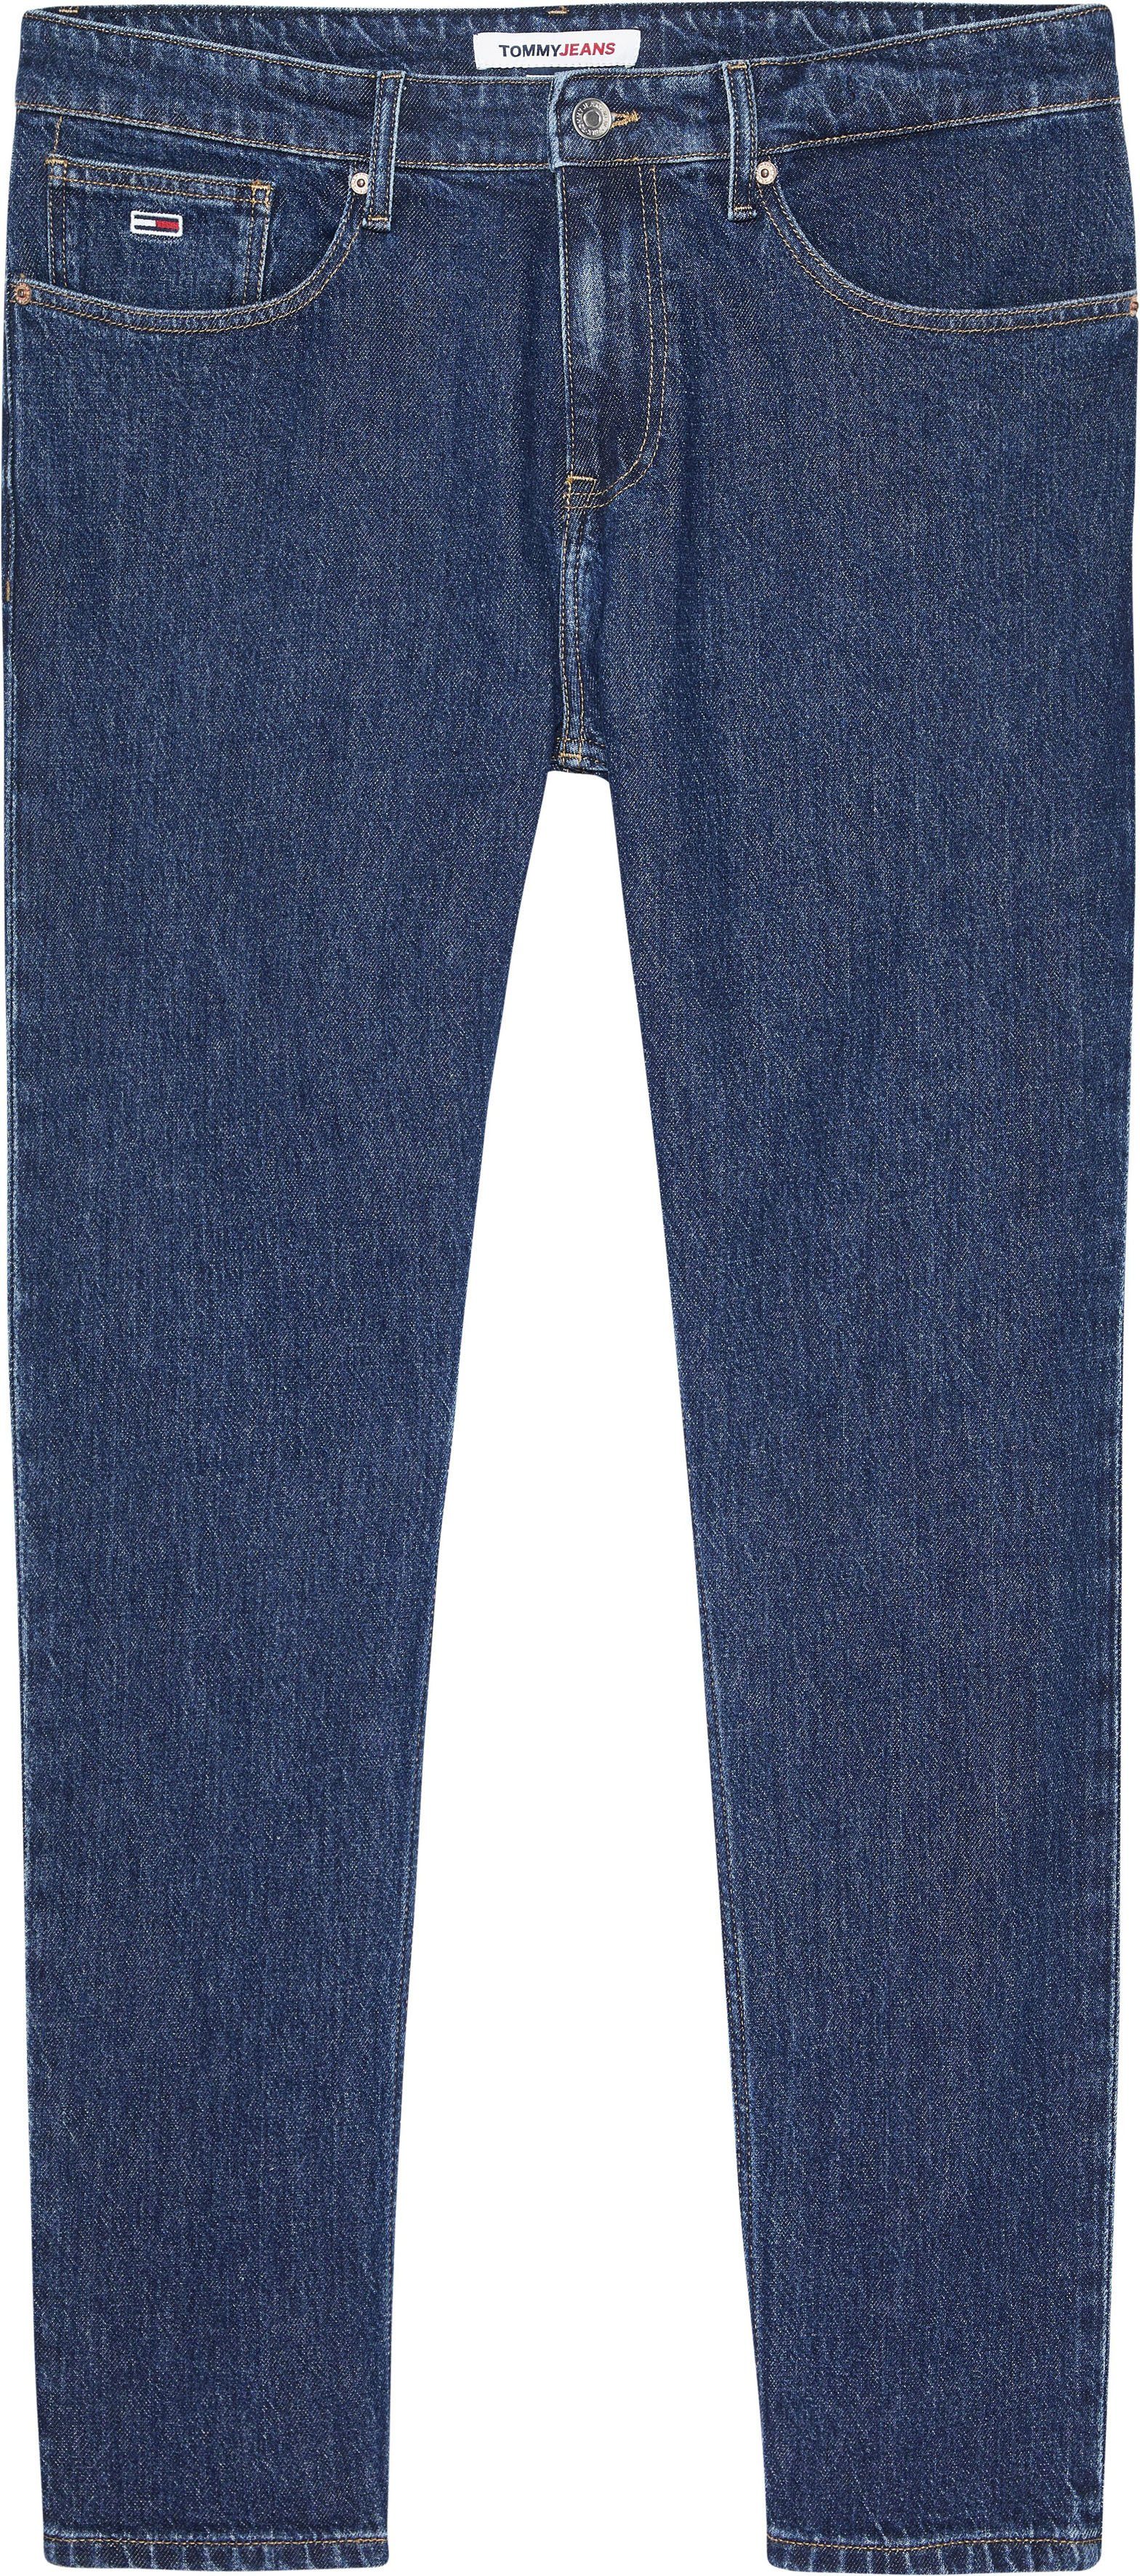 denim TPRD mit Jeans SLIM AUSTIN Lederbadge blue Tommy Slim-fit-Jeans